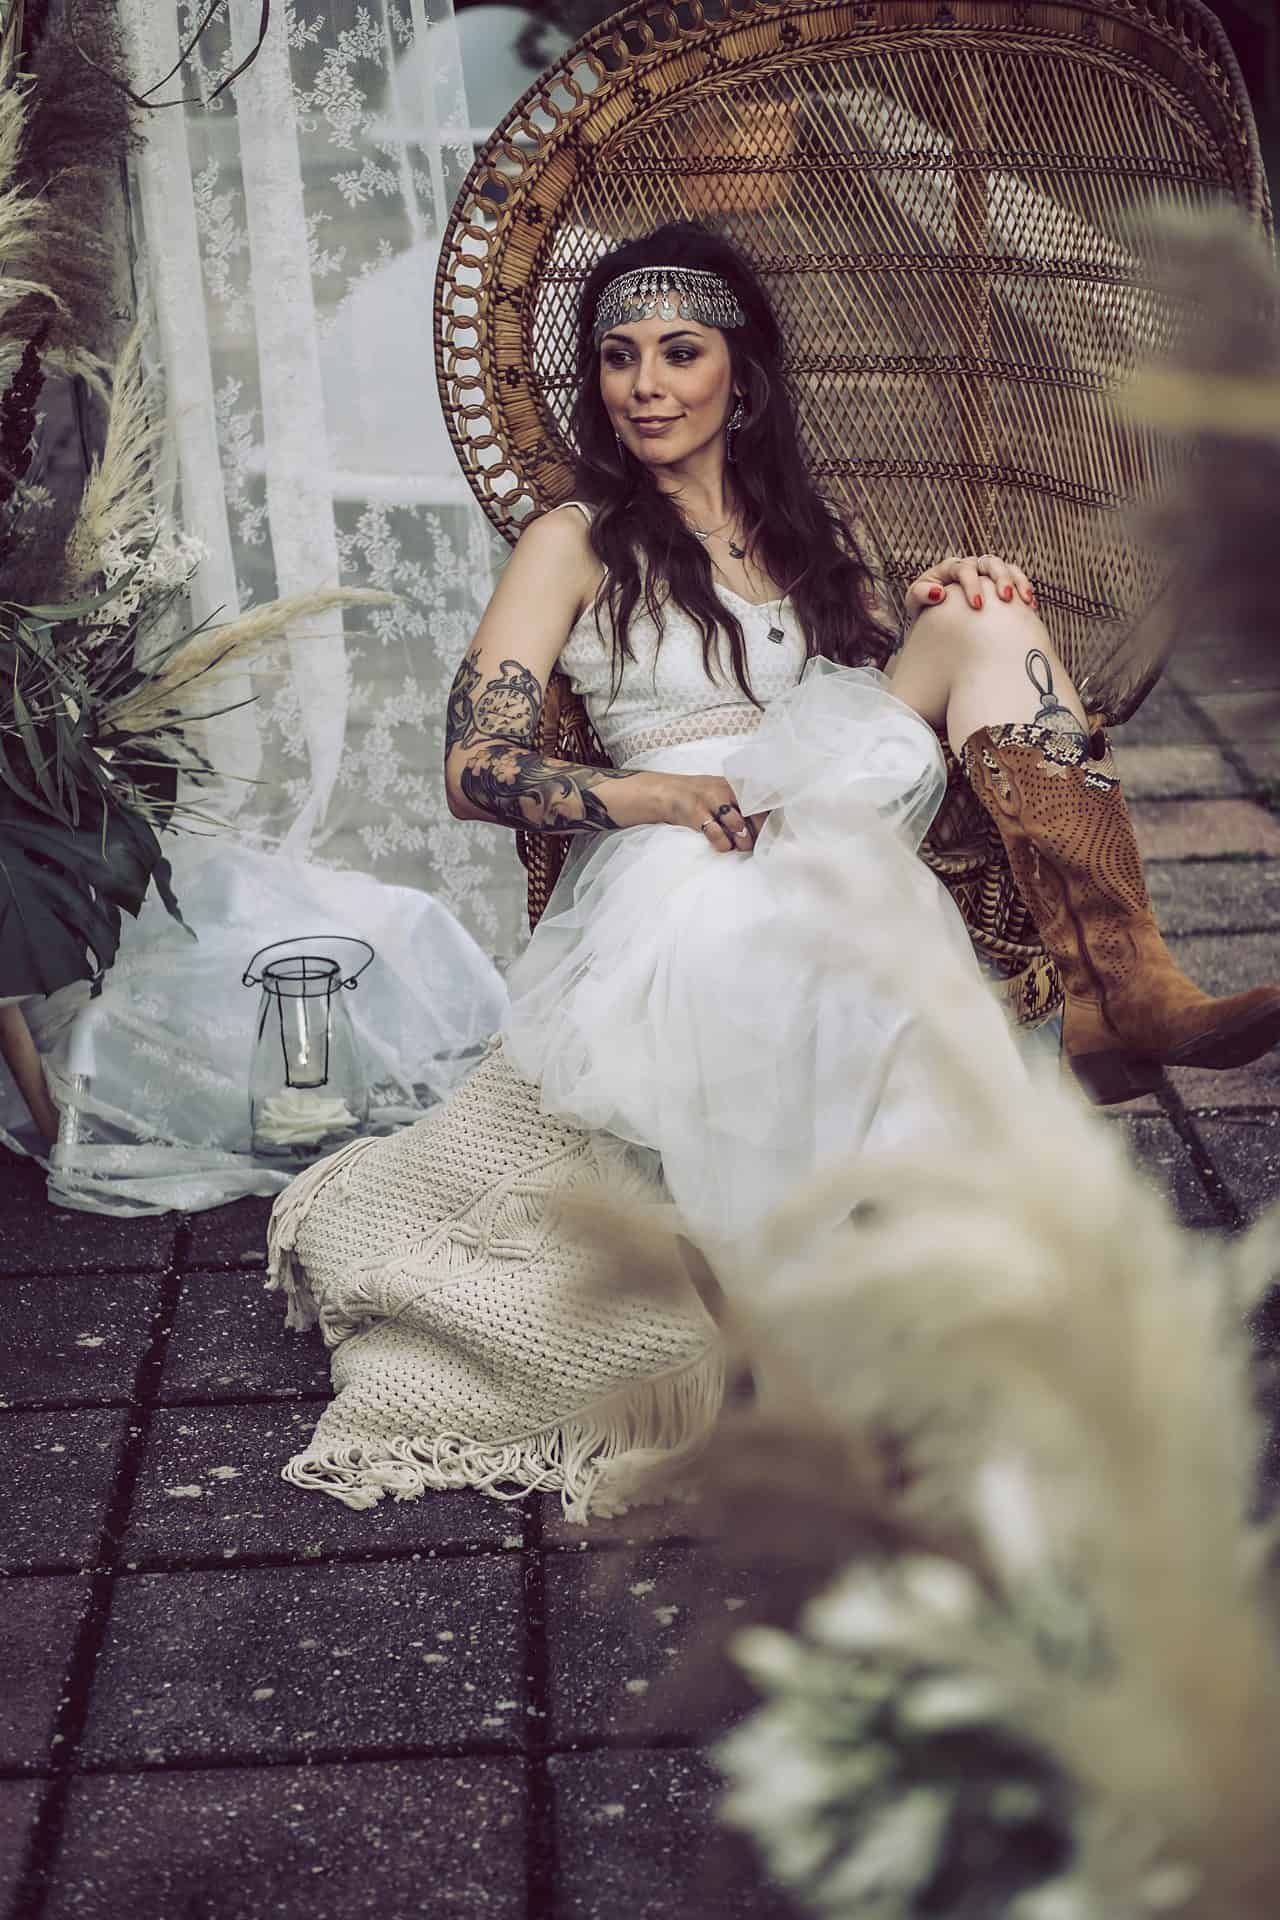 Eine Frau in einem weißen Kleid sitzt auf einem Korbstuhl.